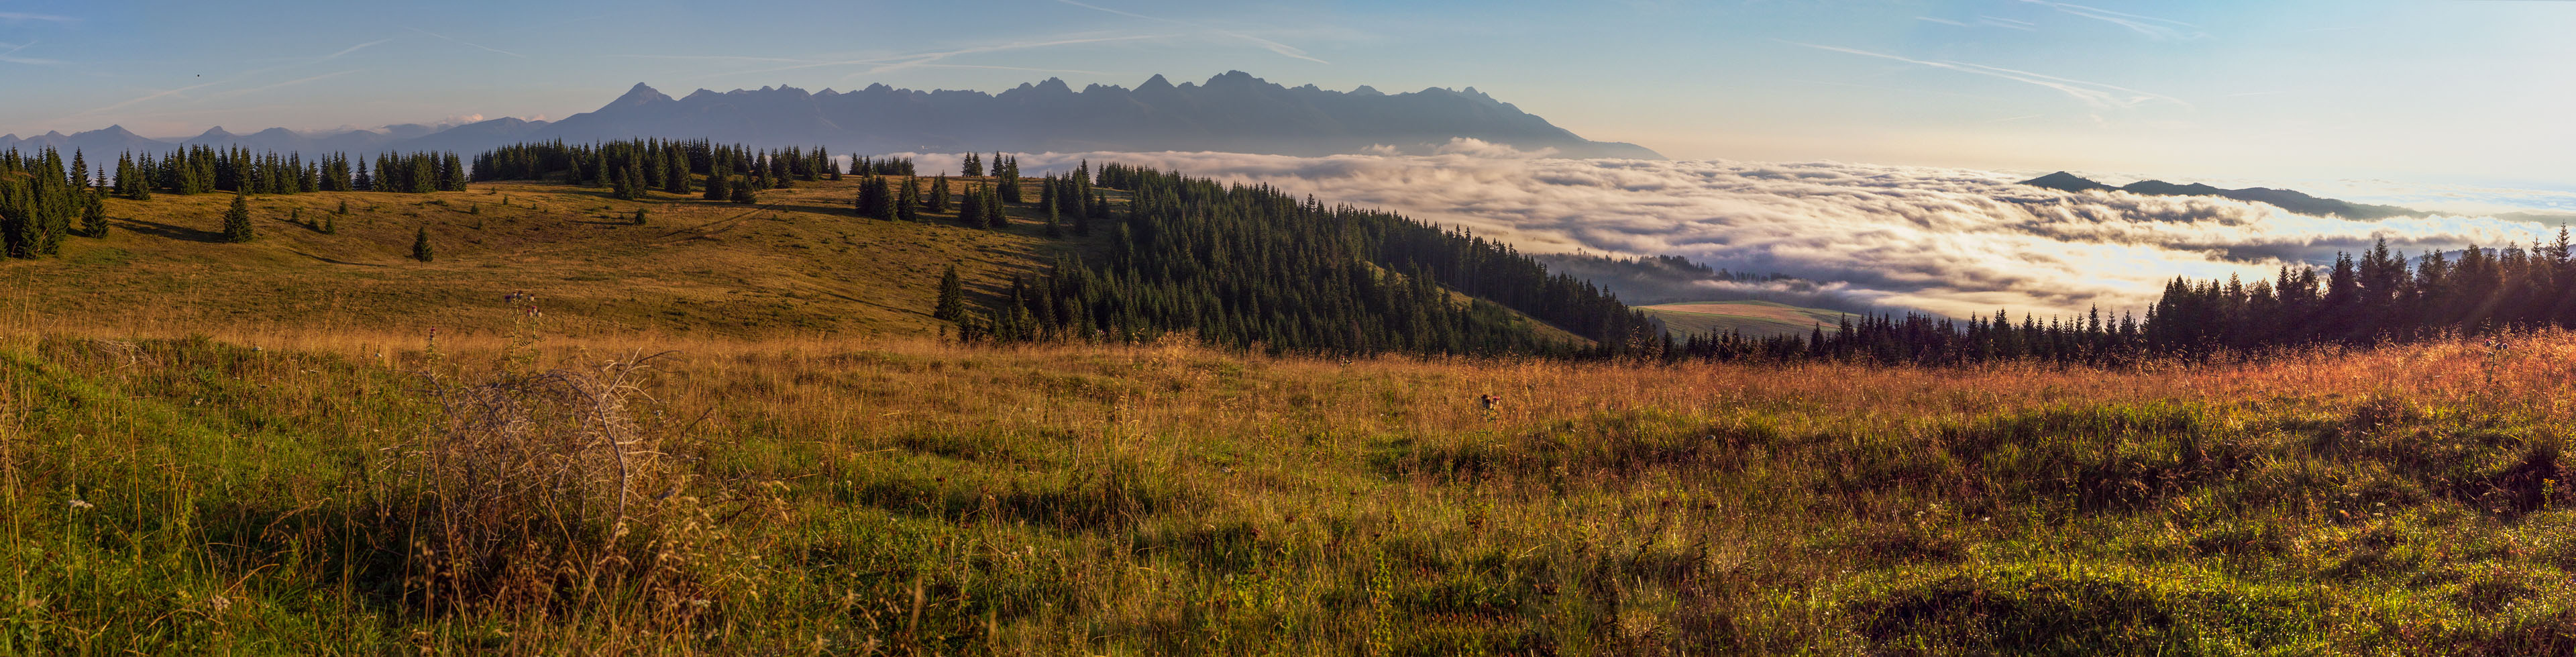 Čučoriedkový deň a Panská hoľa z Pred Soľankou (Nízke Tatry)